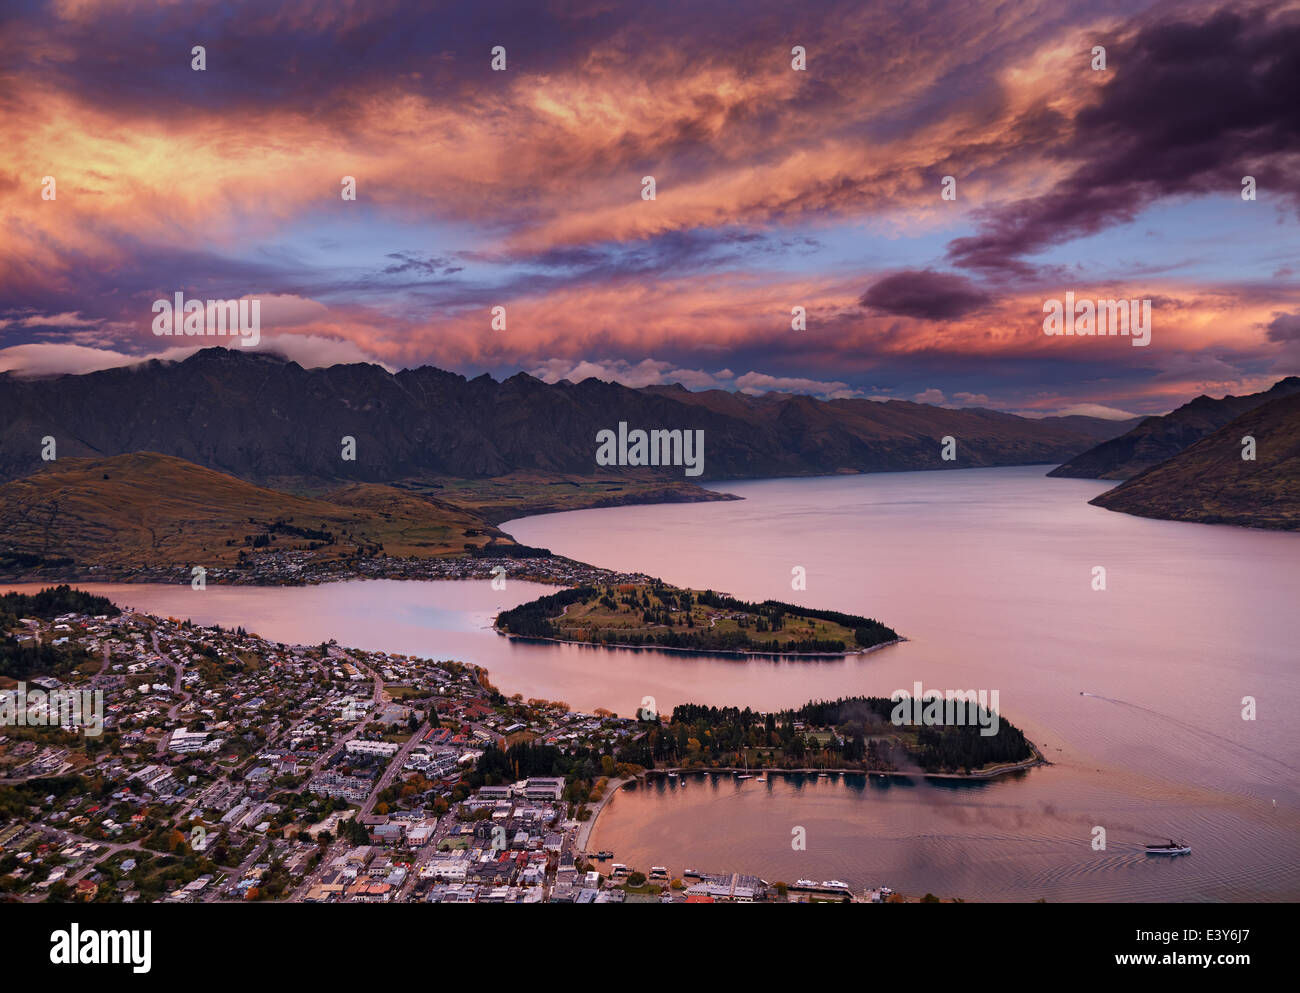 La ville de Queenstown et le lac Wakatipu et les montagnes Remarkables au coucher du soleil, Nouvelle-Zélande Banque D'Images